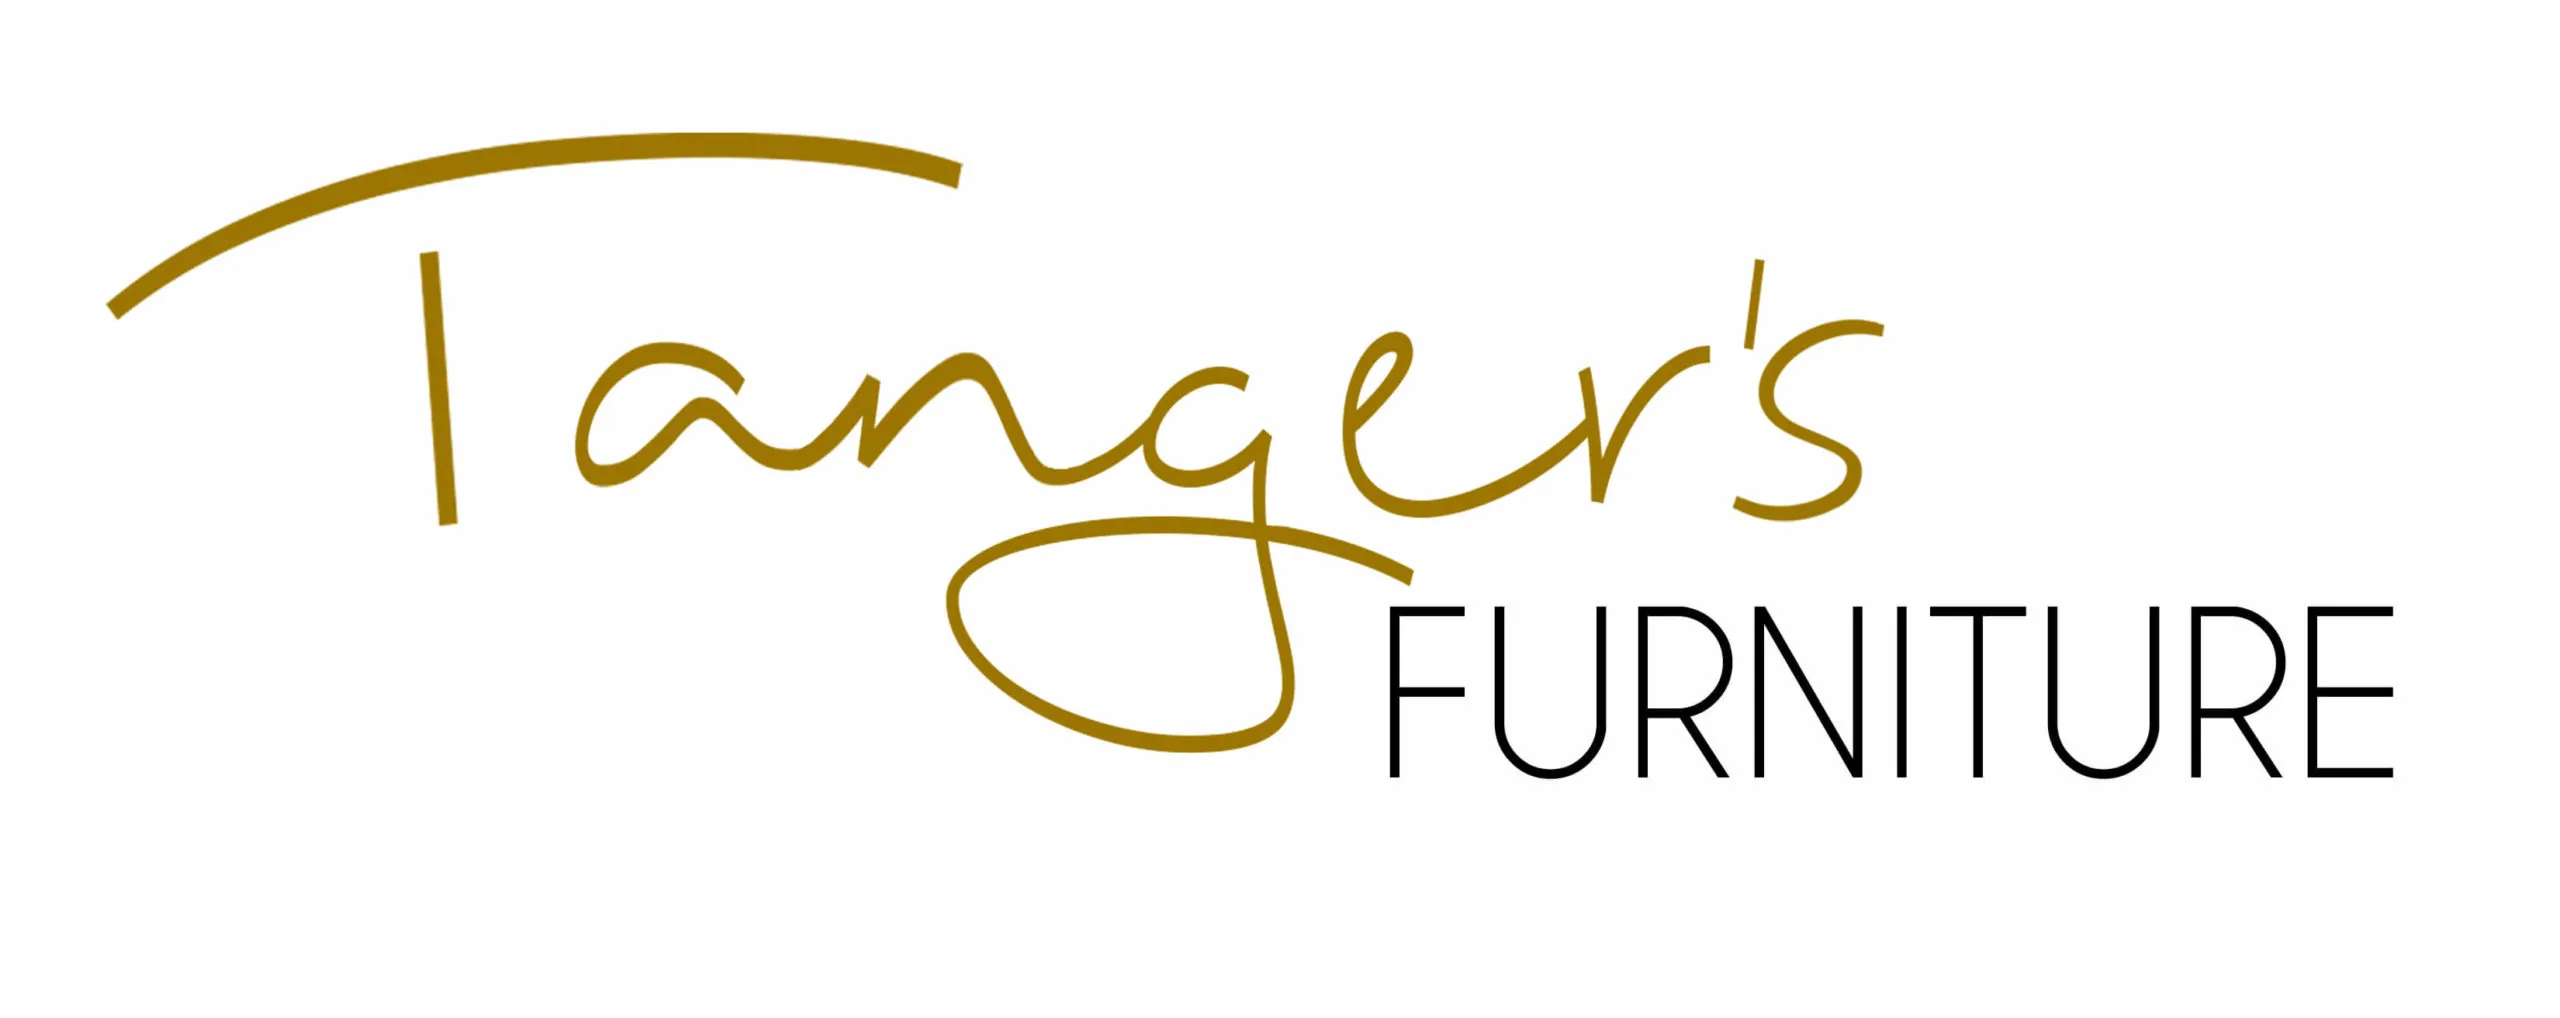 Tanger's Furniture